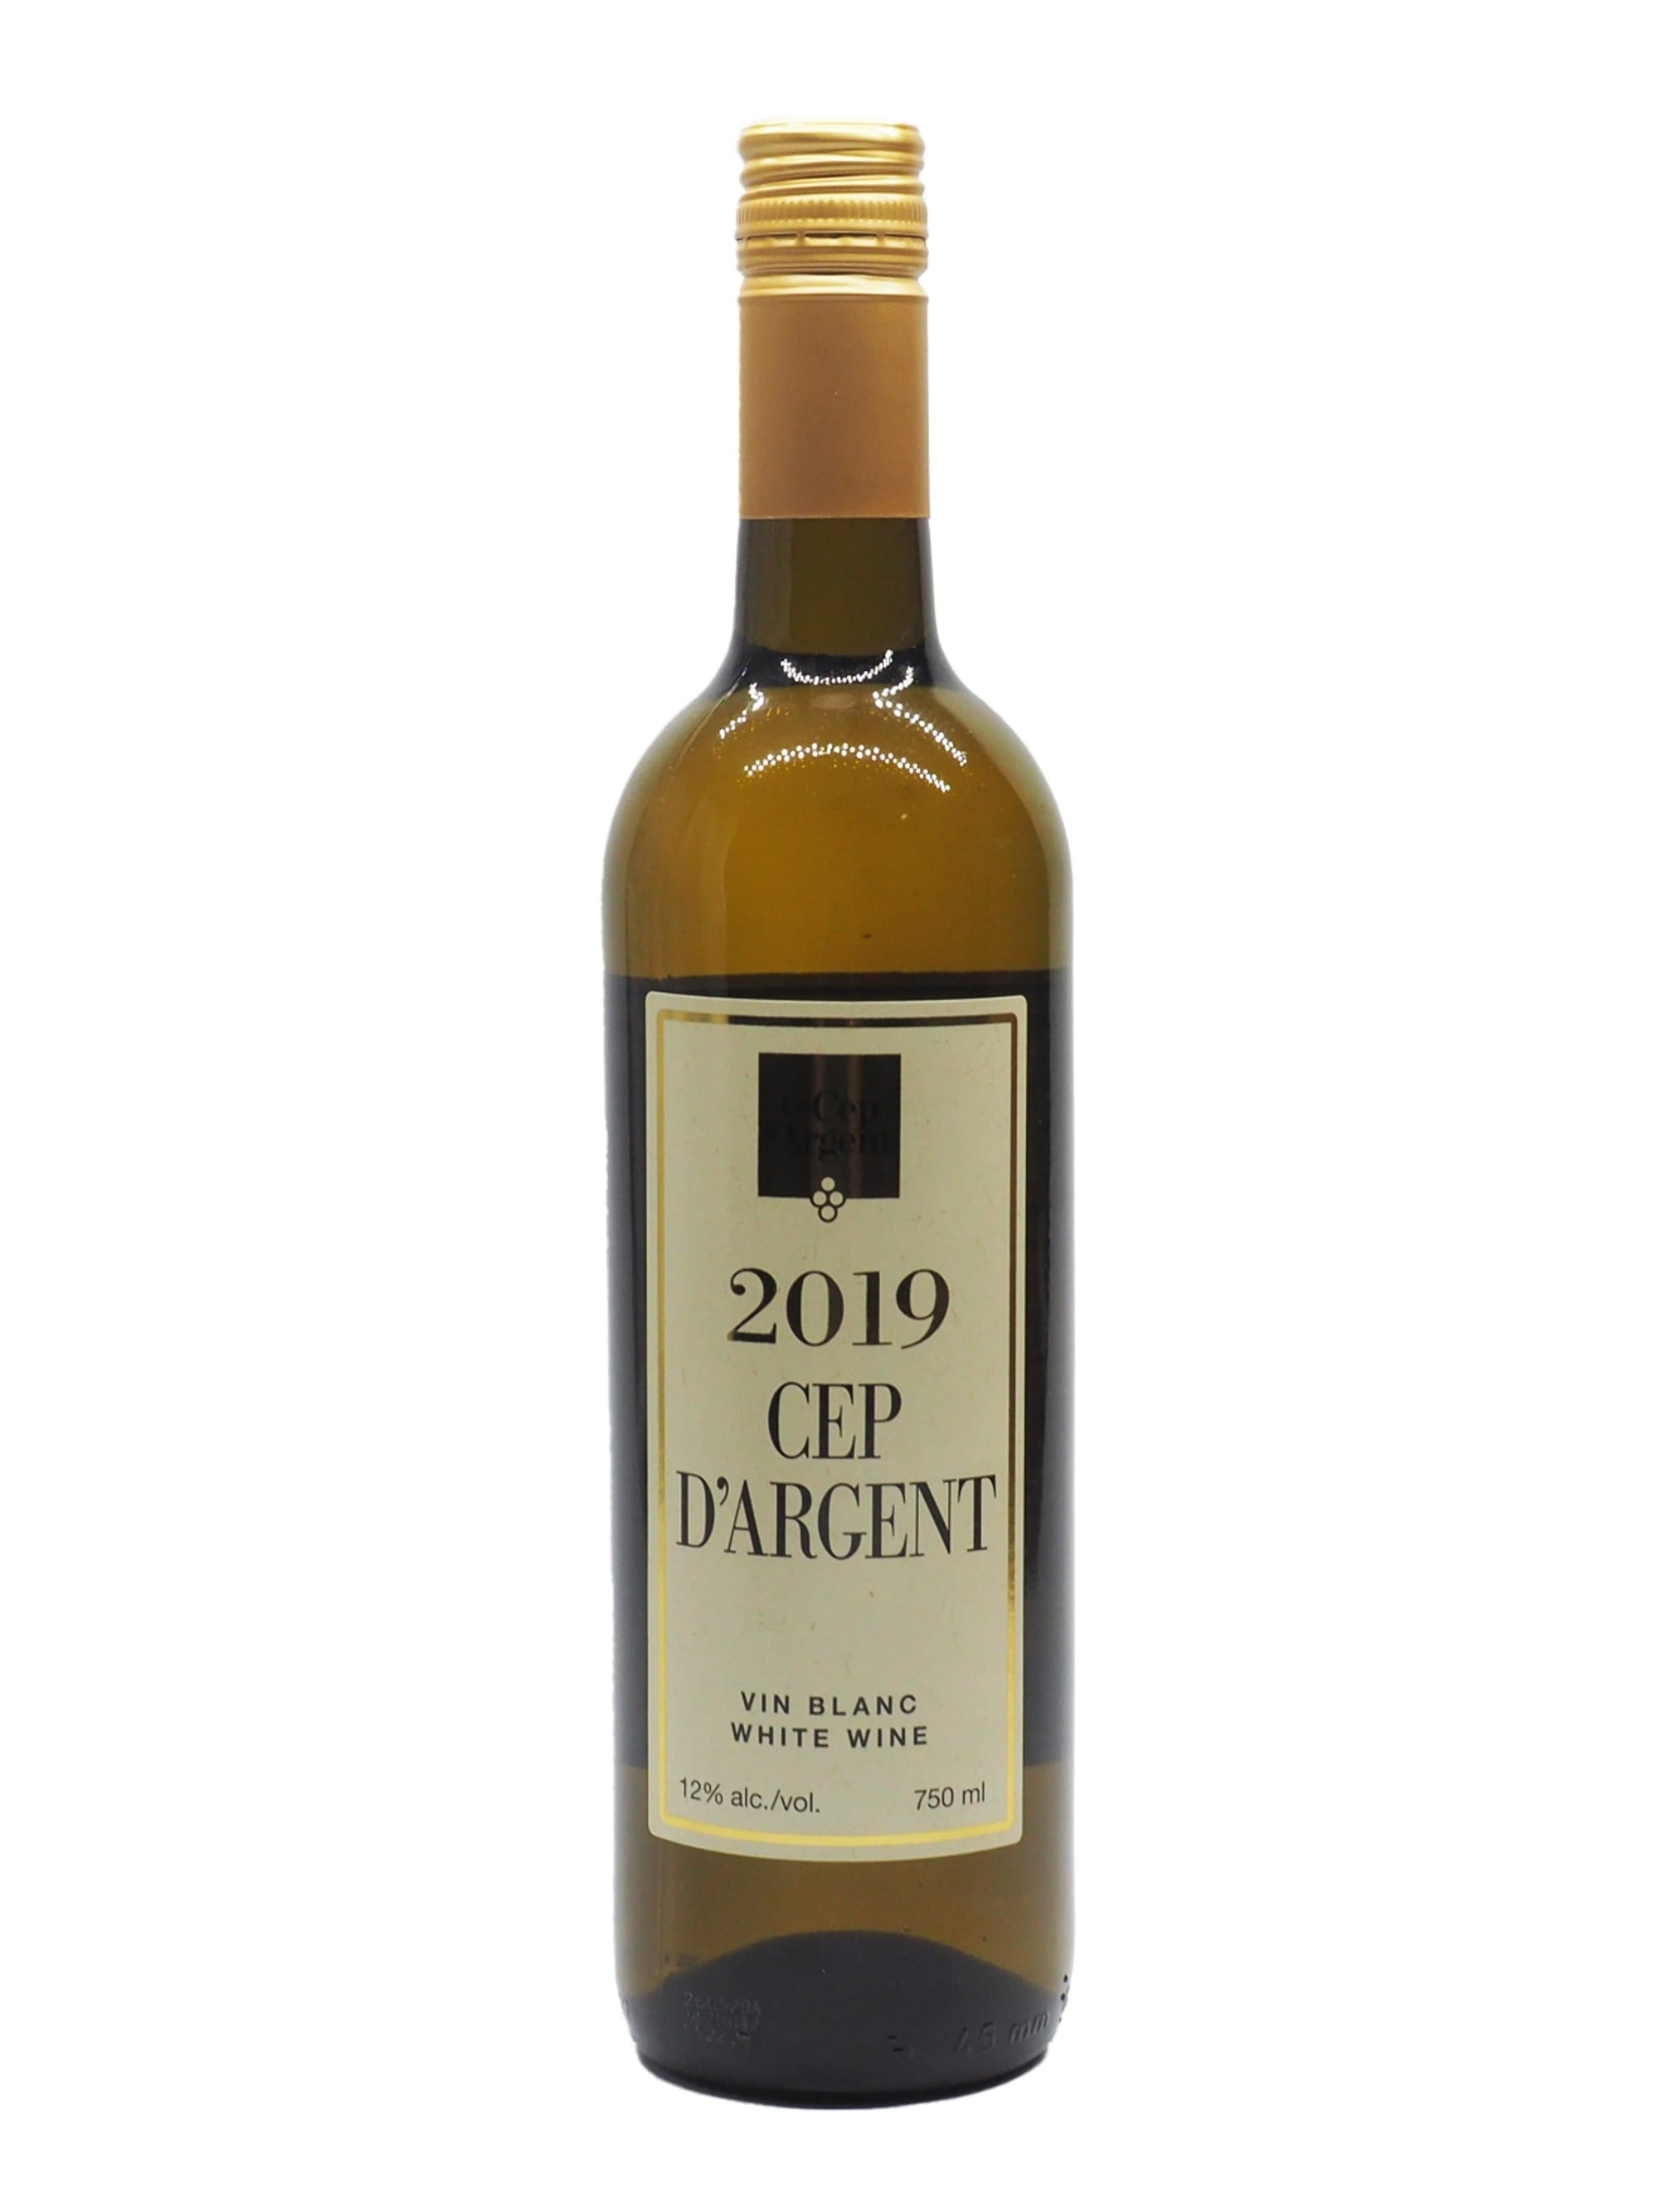 Le Cep d'Argent - Vin blanc du vignoble du Cep d'Argent